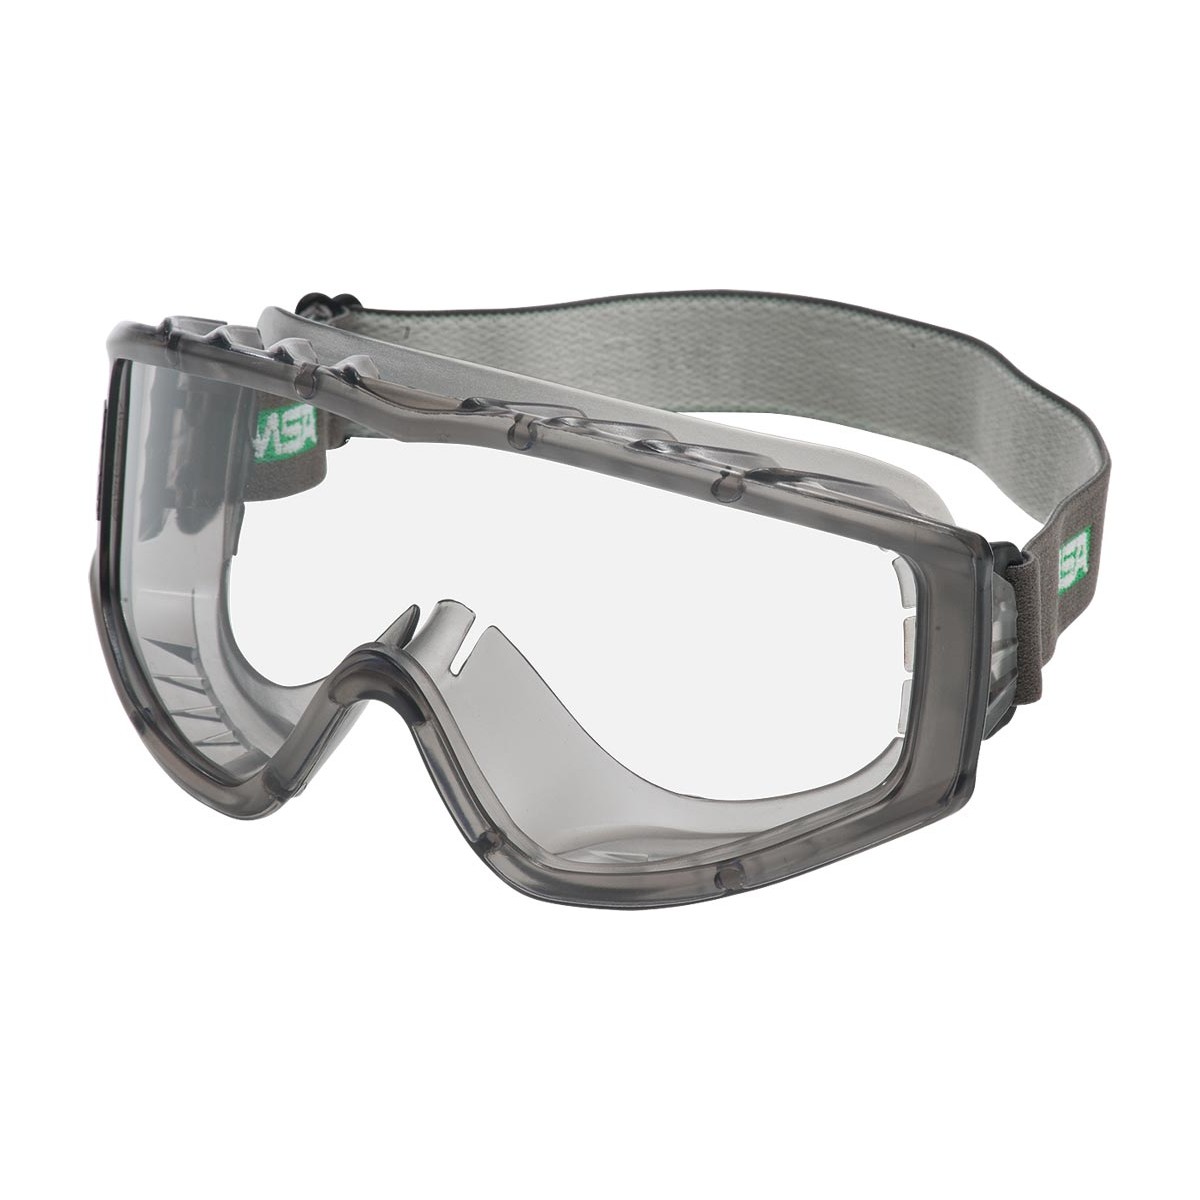 Специальные защитные очки. MSA очки защитные. Очки защитные сетчатые MSA. Защитные очки Milwaukee Premium. Защитные очки Cofra gl-01.